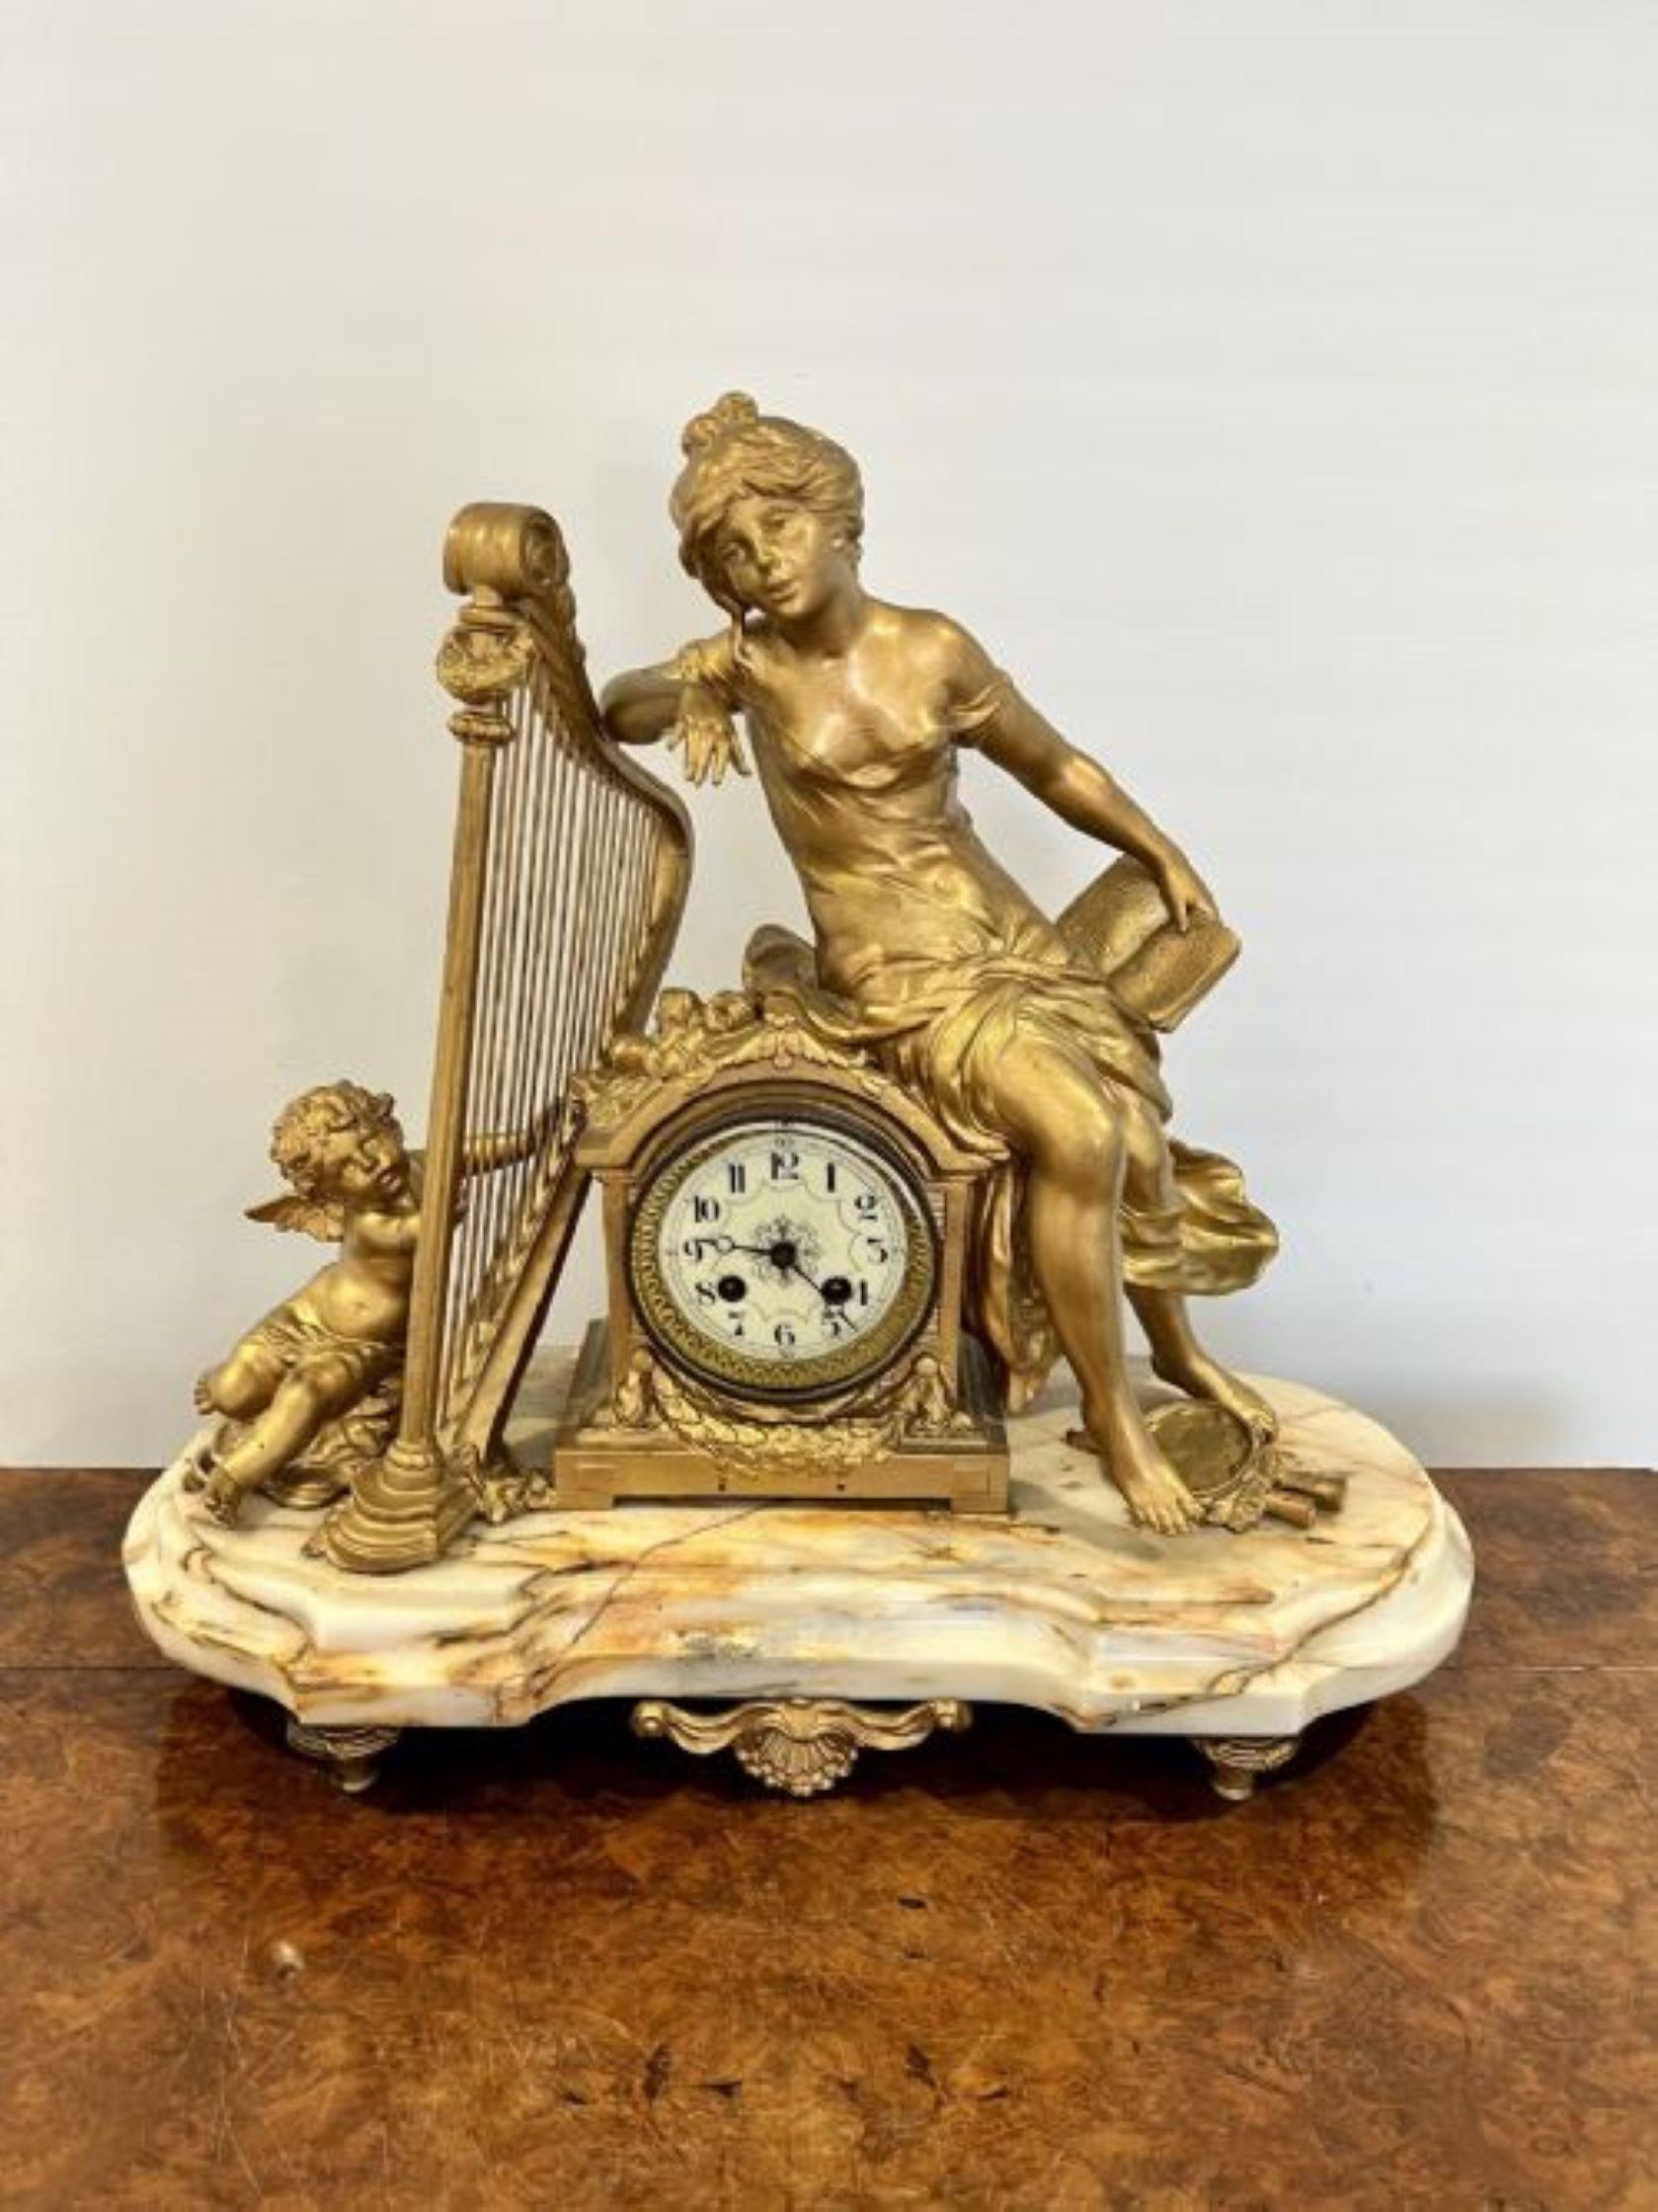 Fantastische Qualität große antike viktorianische Mantel-Uhr, mit hervorragender Qualität vergoldet Montierungen der klassischen Figuren einer Dame, Cherub und eine Harfe. Die Dame sitzt über einer qualitätsvollen, verzierten französischen Uhr mit